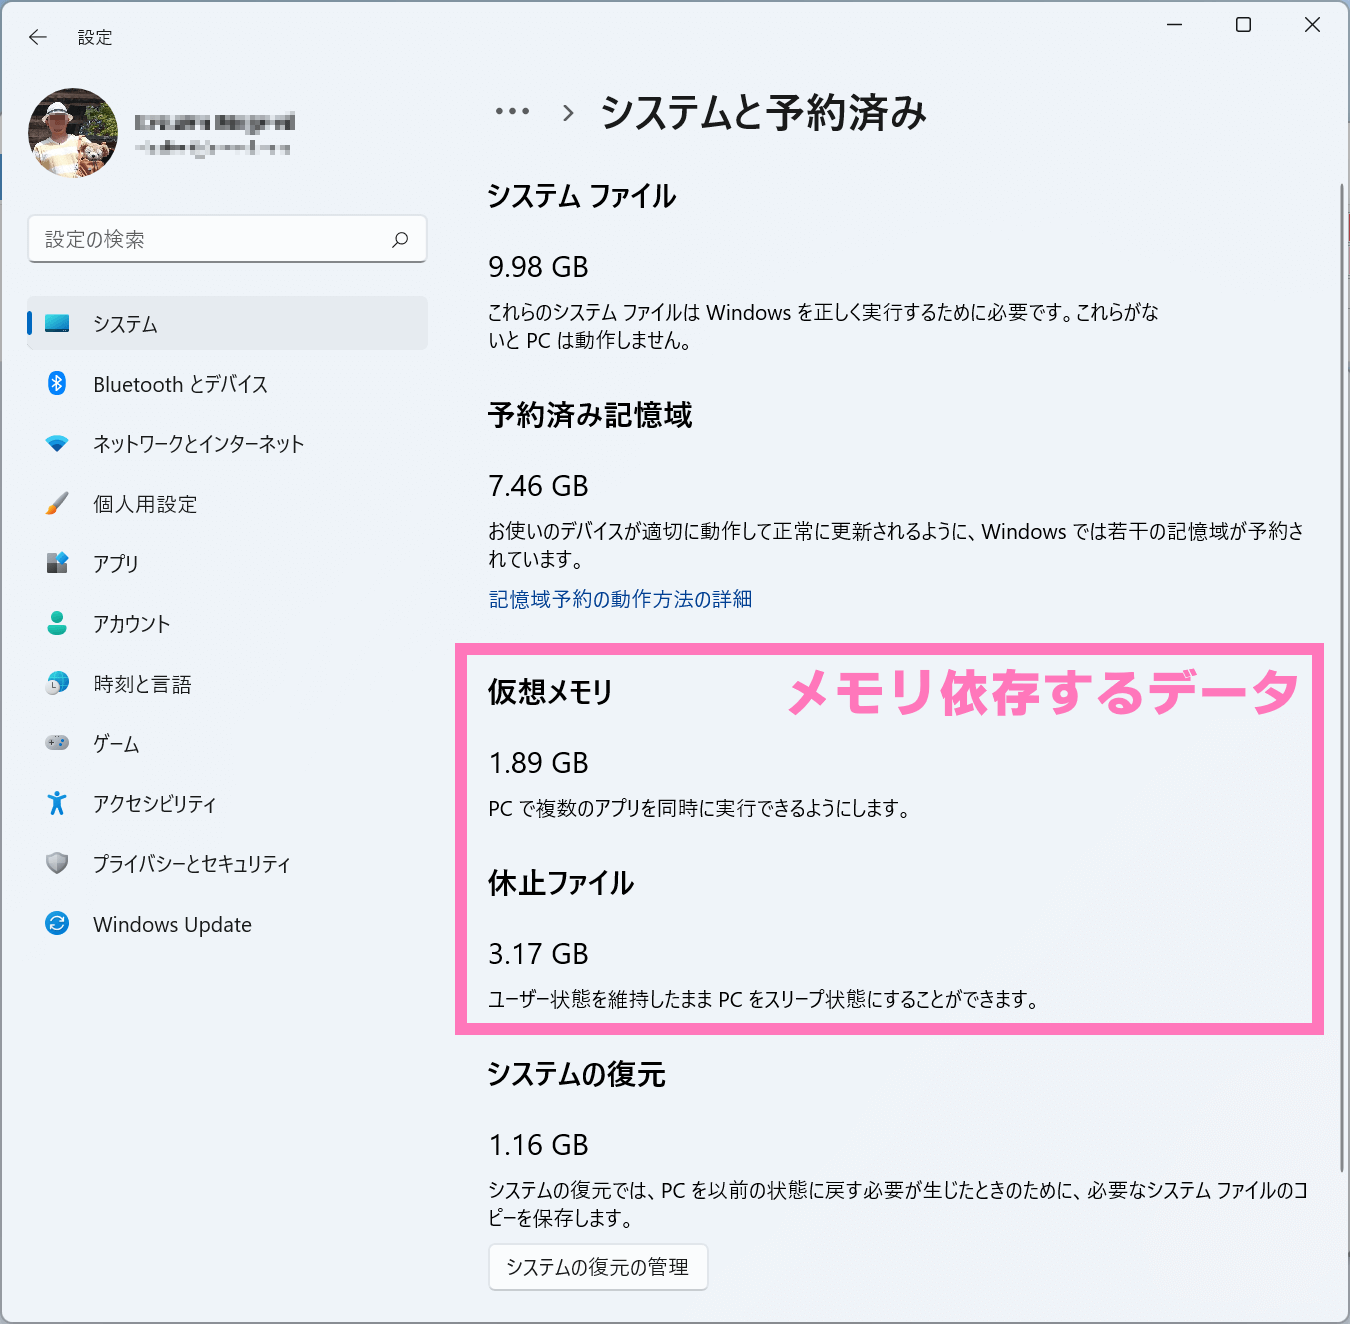 Windows 11 Pro 初期状態のデータ容量【メモリ8GB】